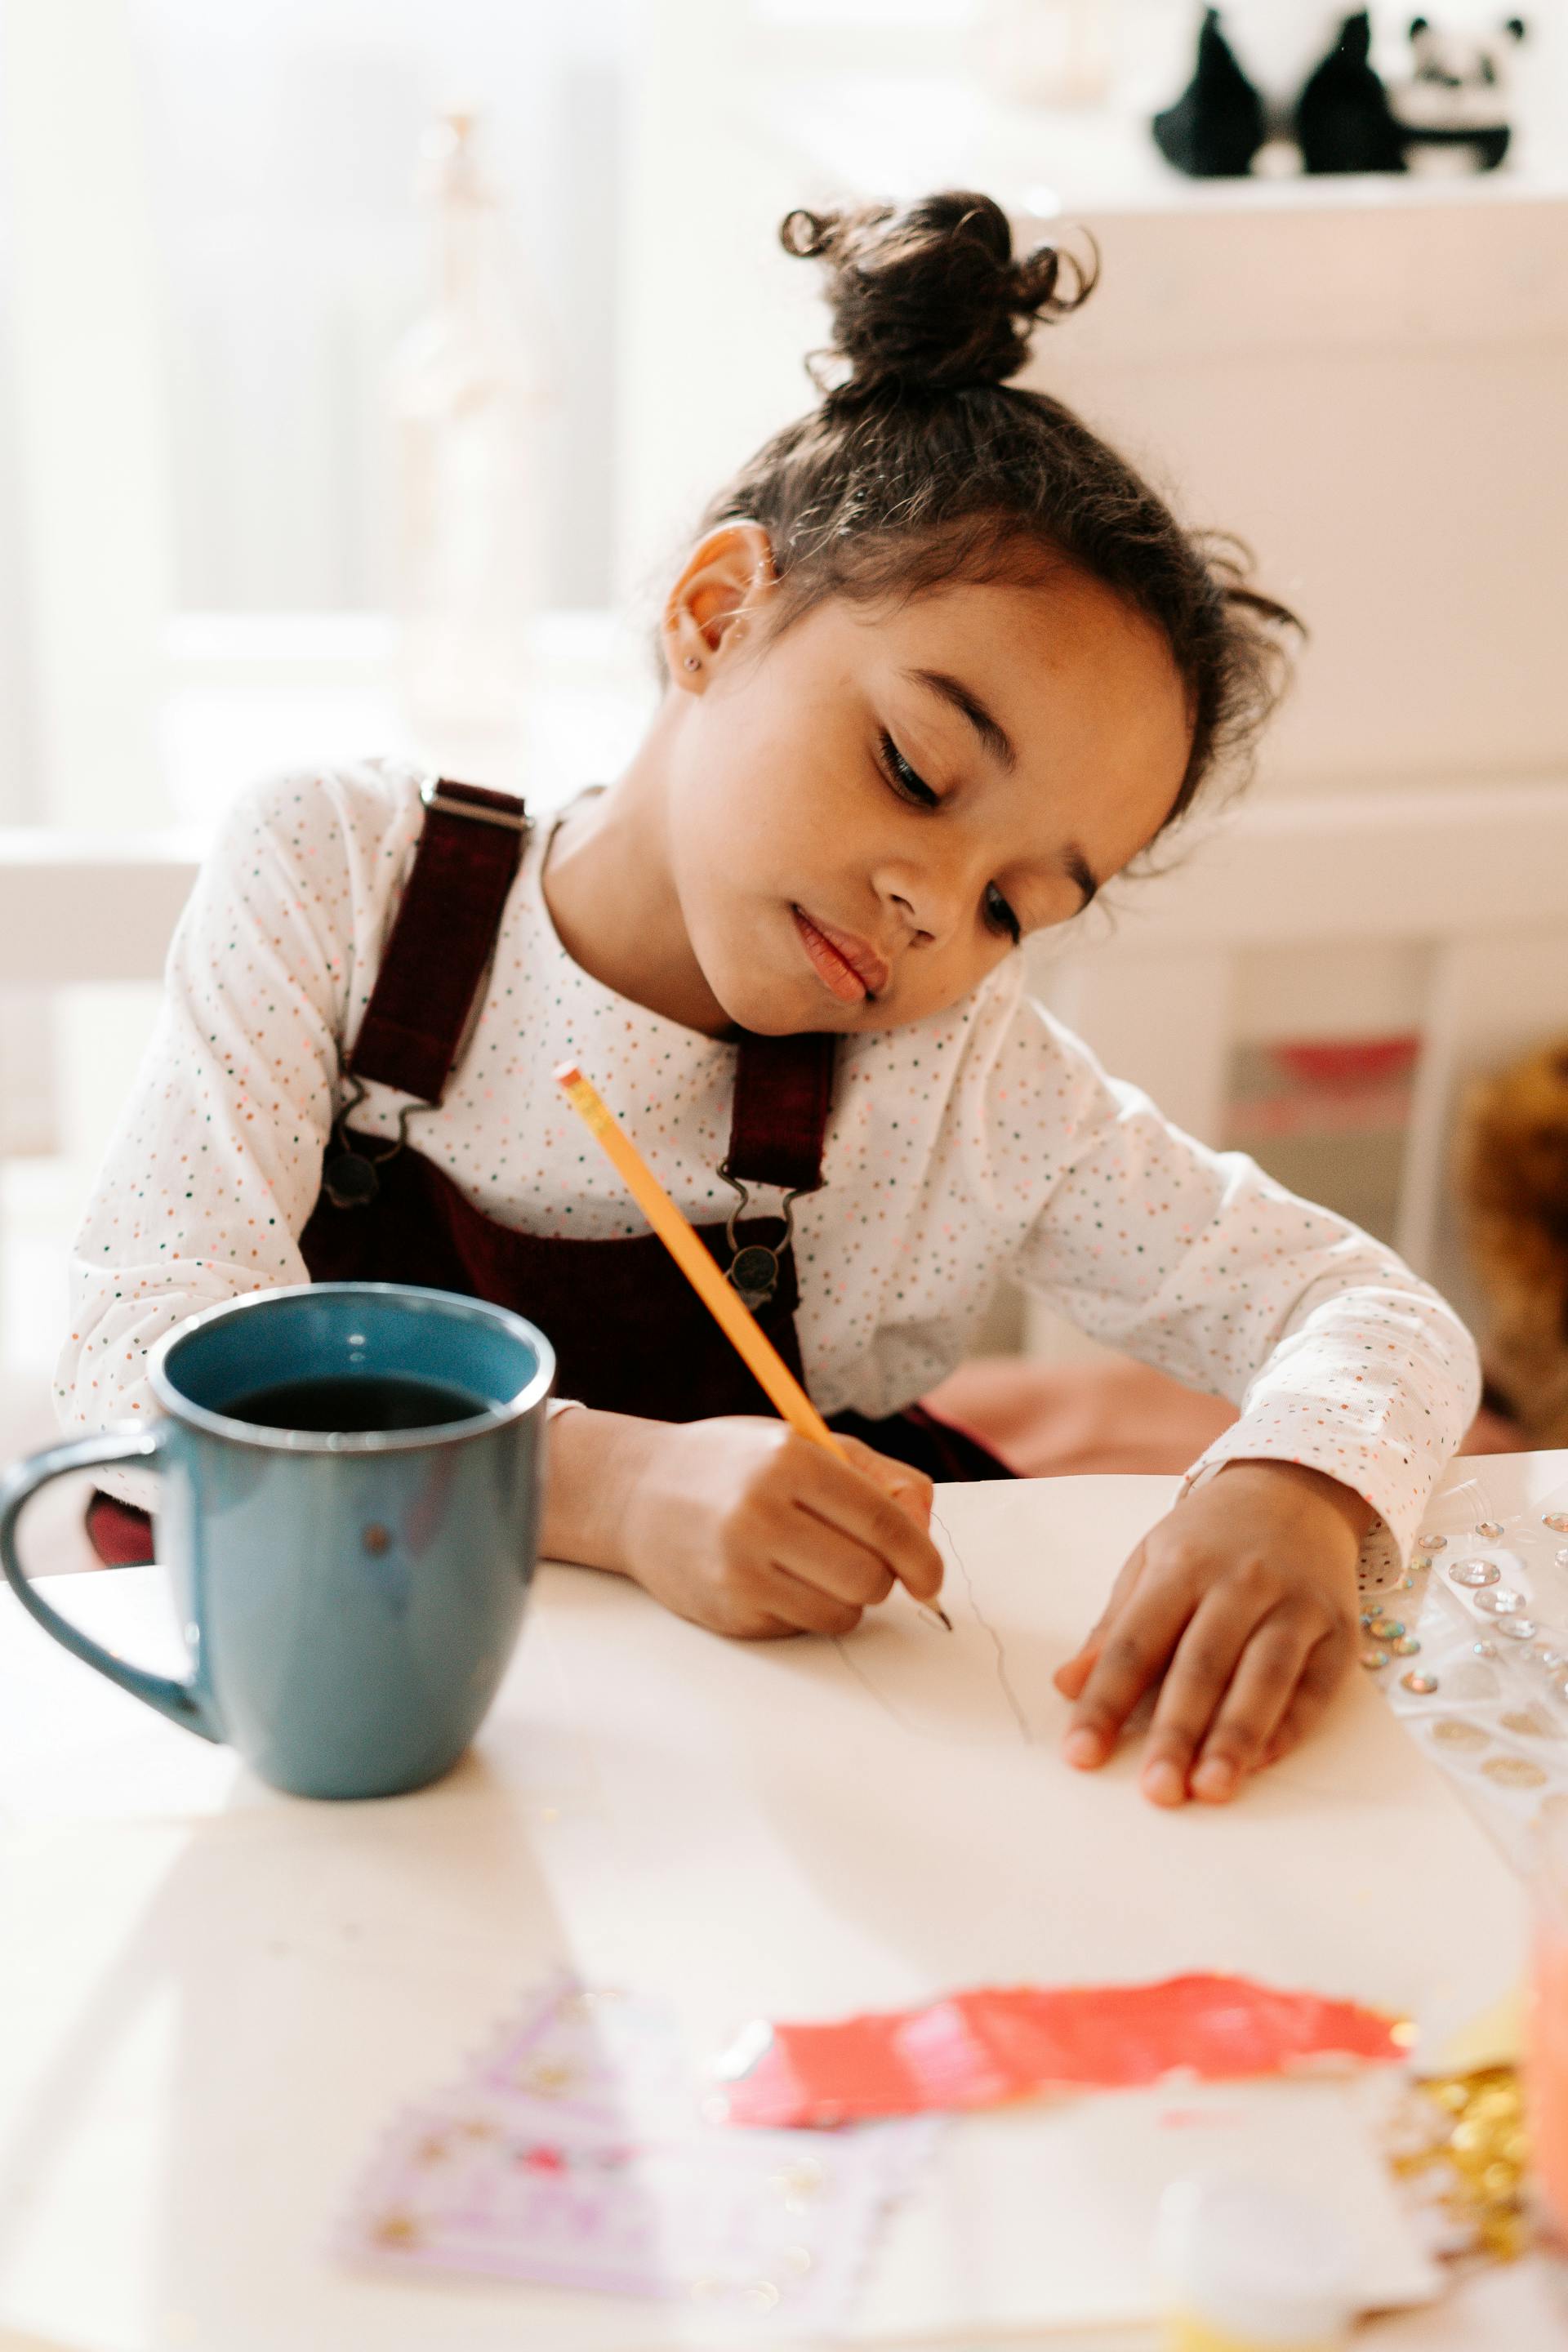 A little girl doing art | Source: Pexels